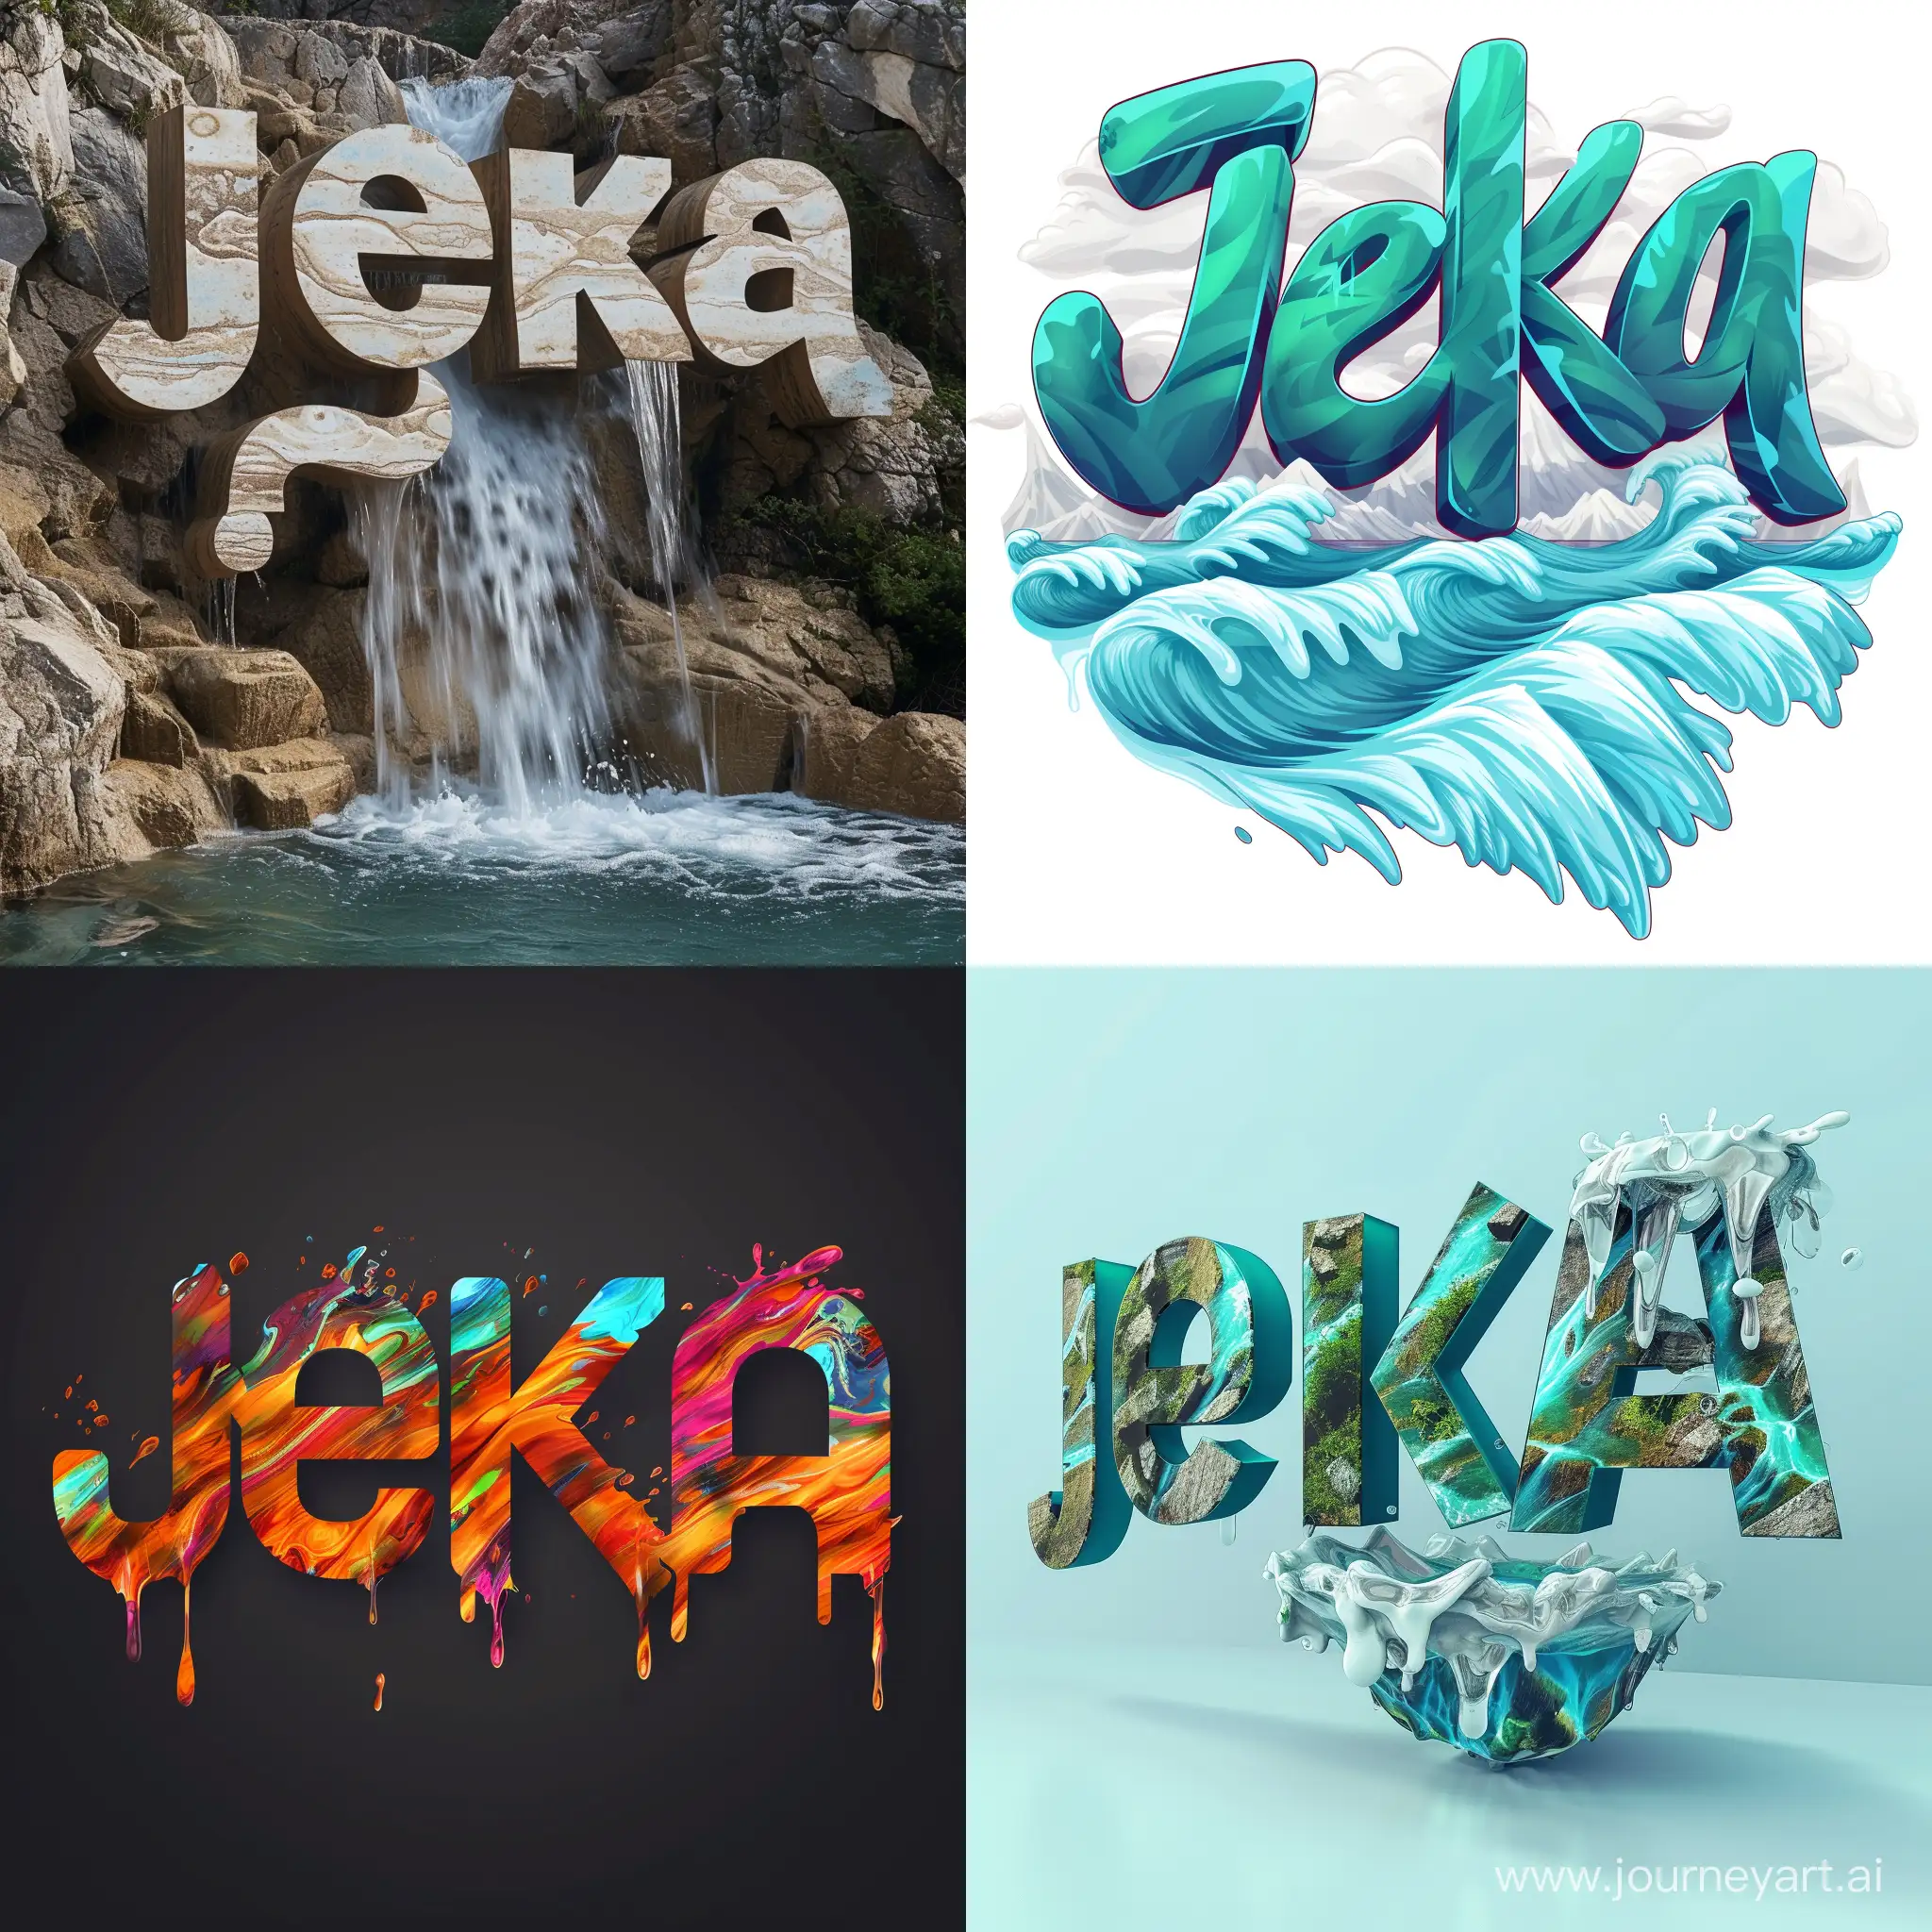 Elegant-Water-Font-Displaying-Jeka